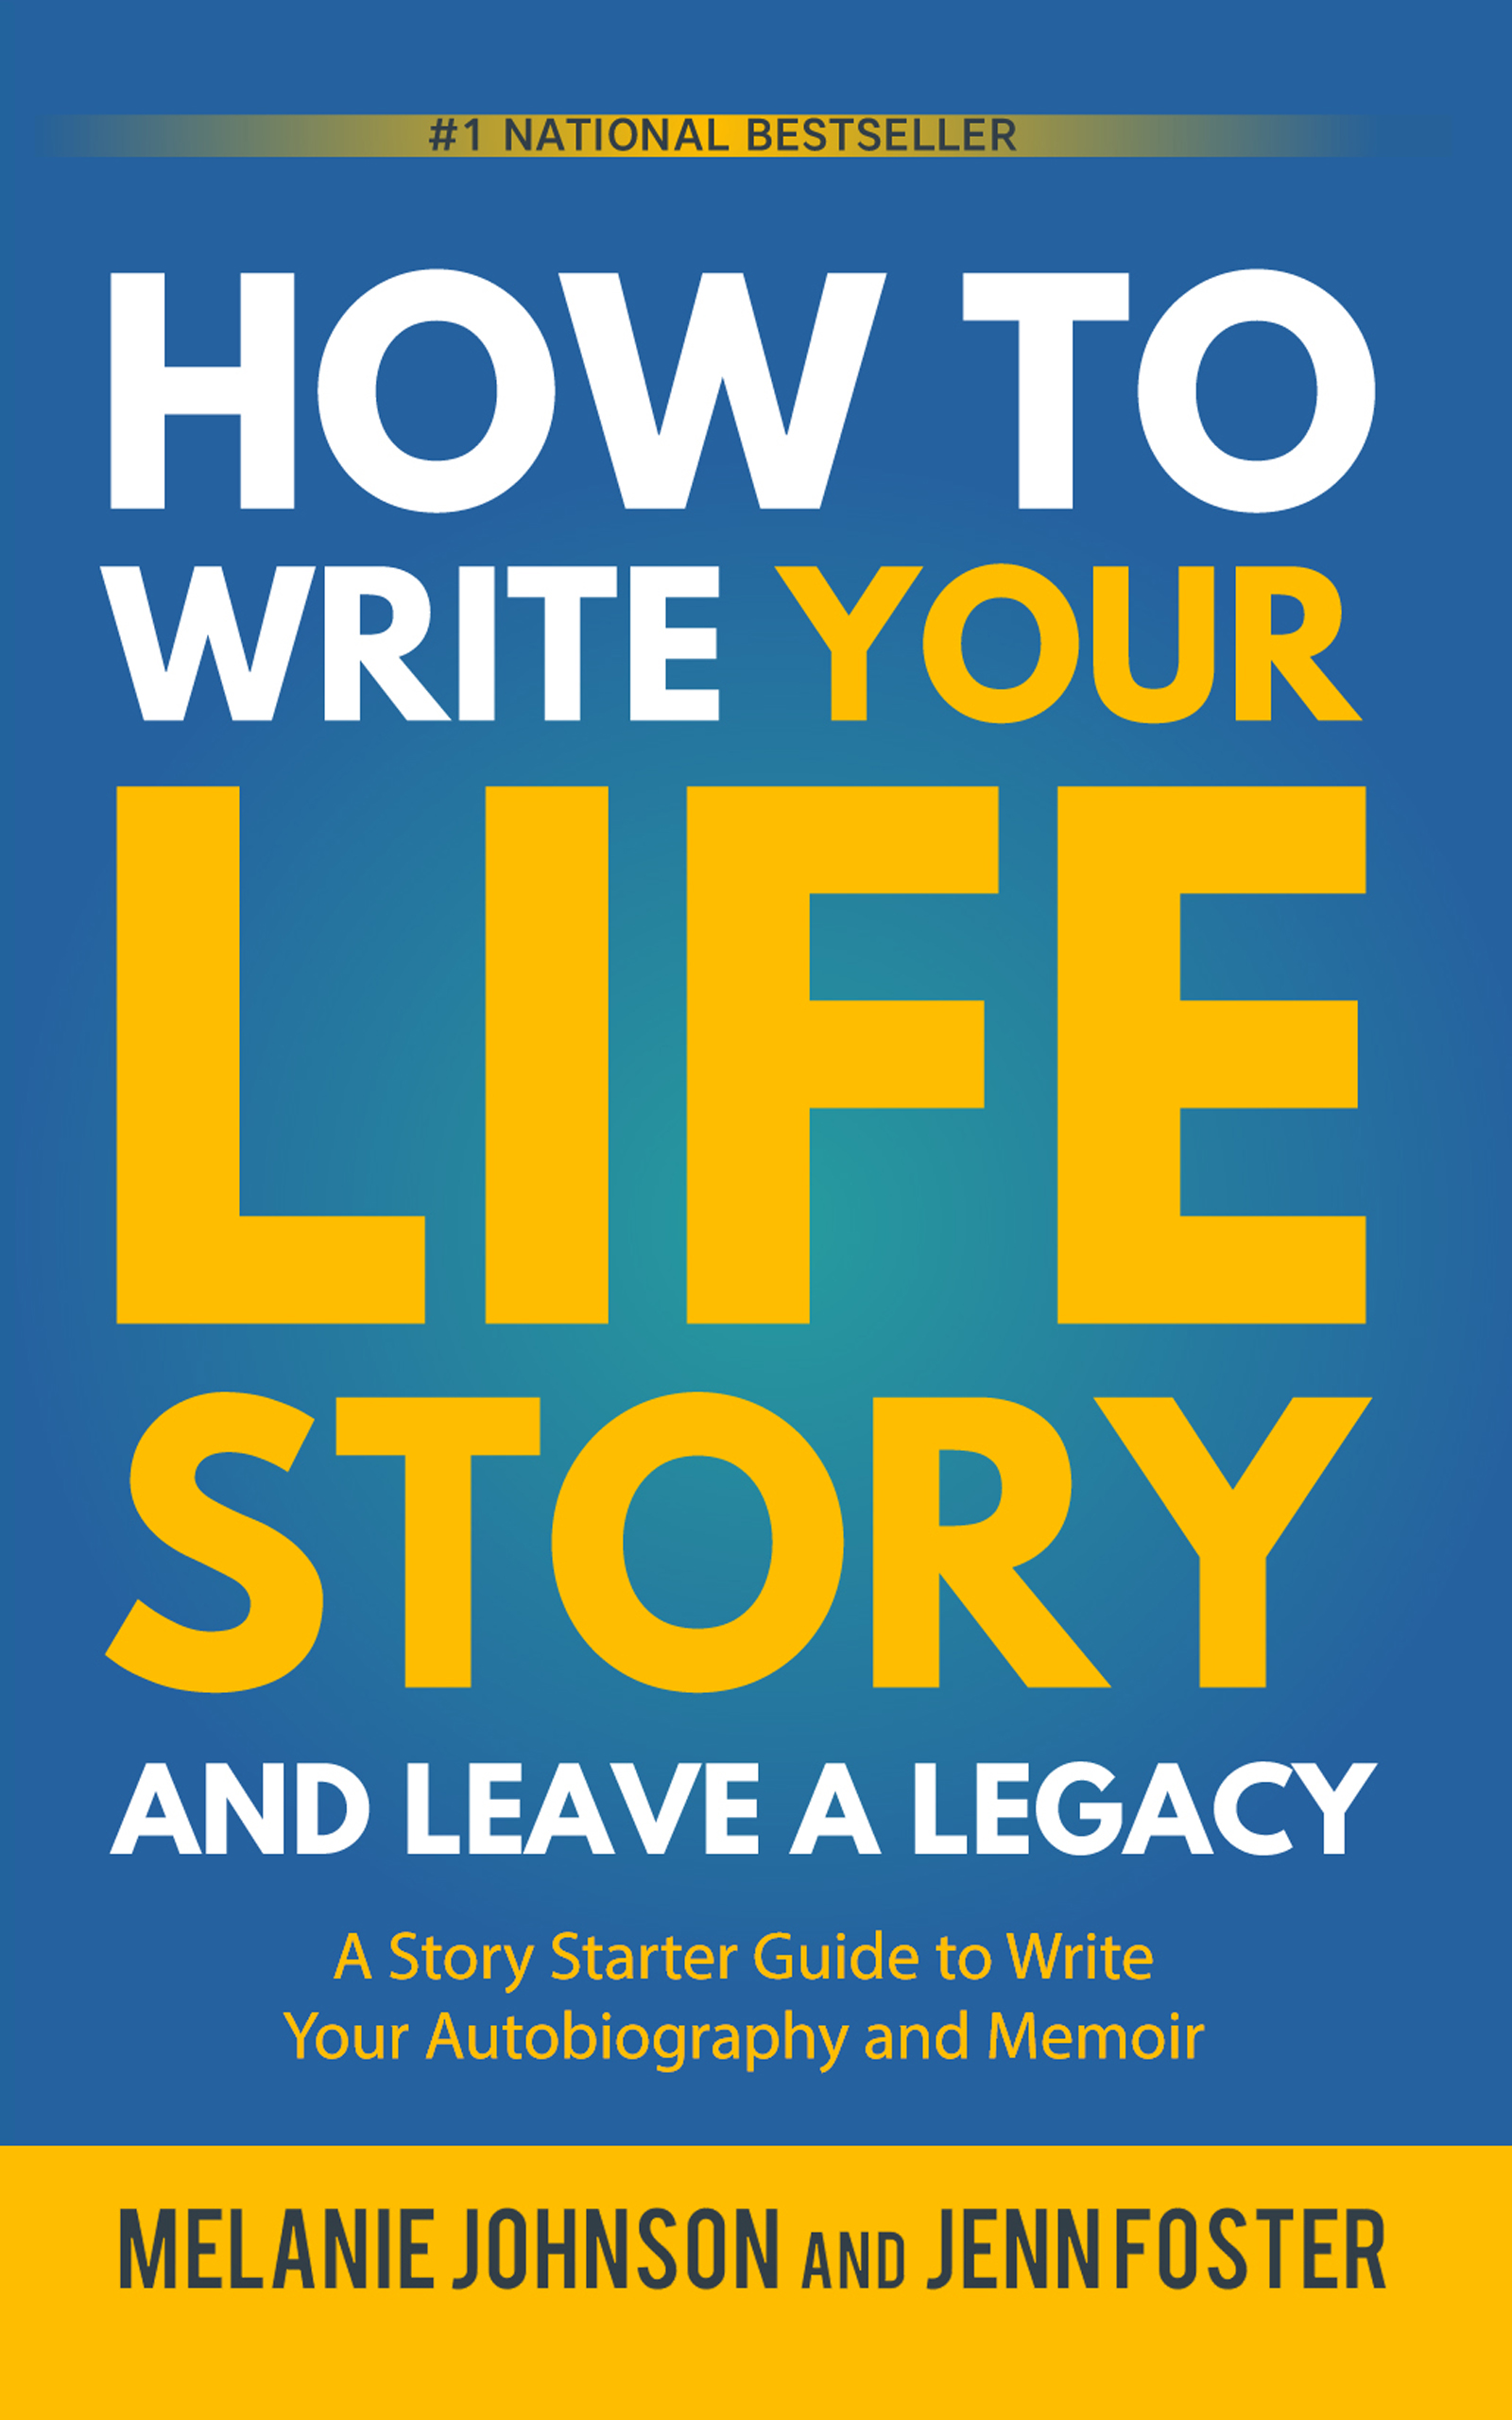 How to write a life legacy memoir